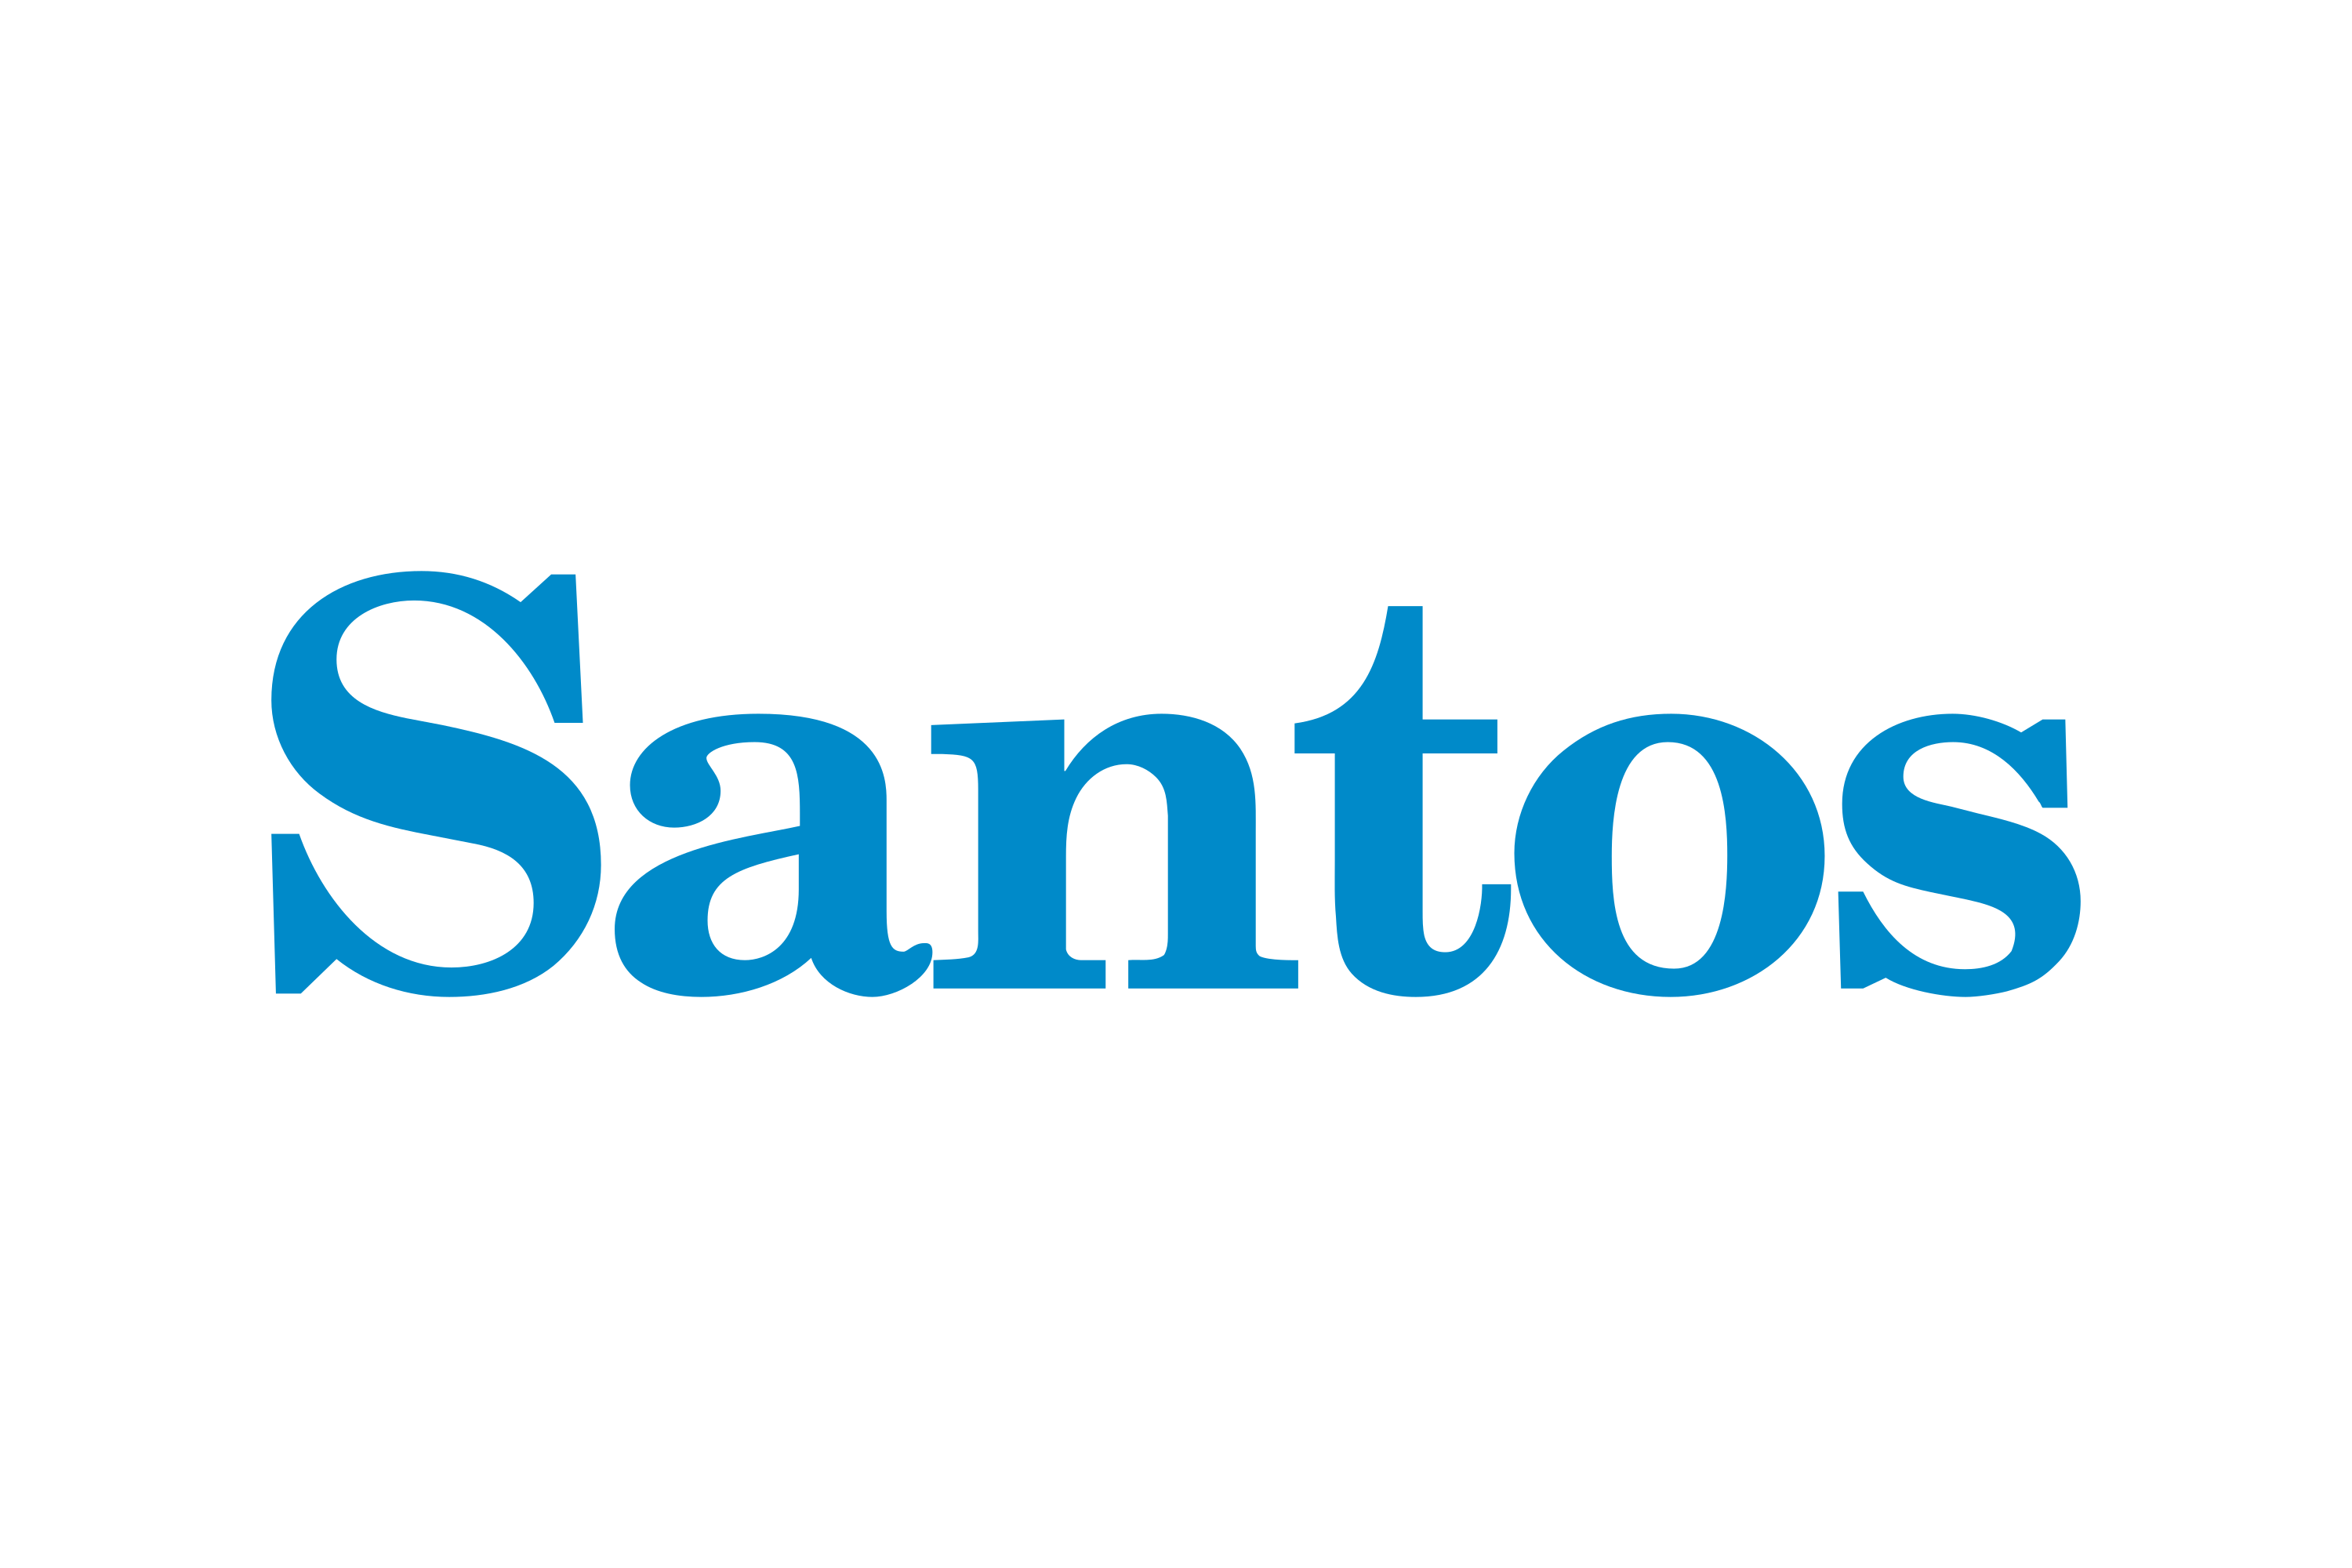 Descubrir Más De 76 Logo Los Santos última Vn